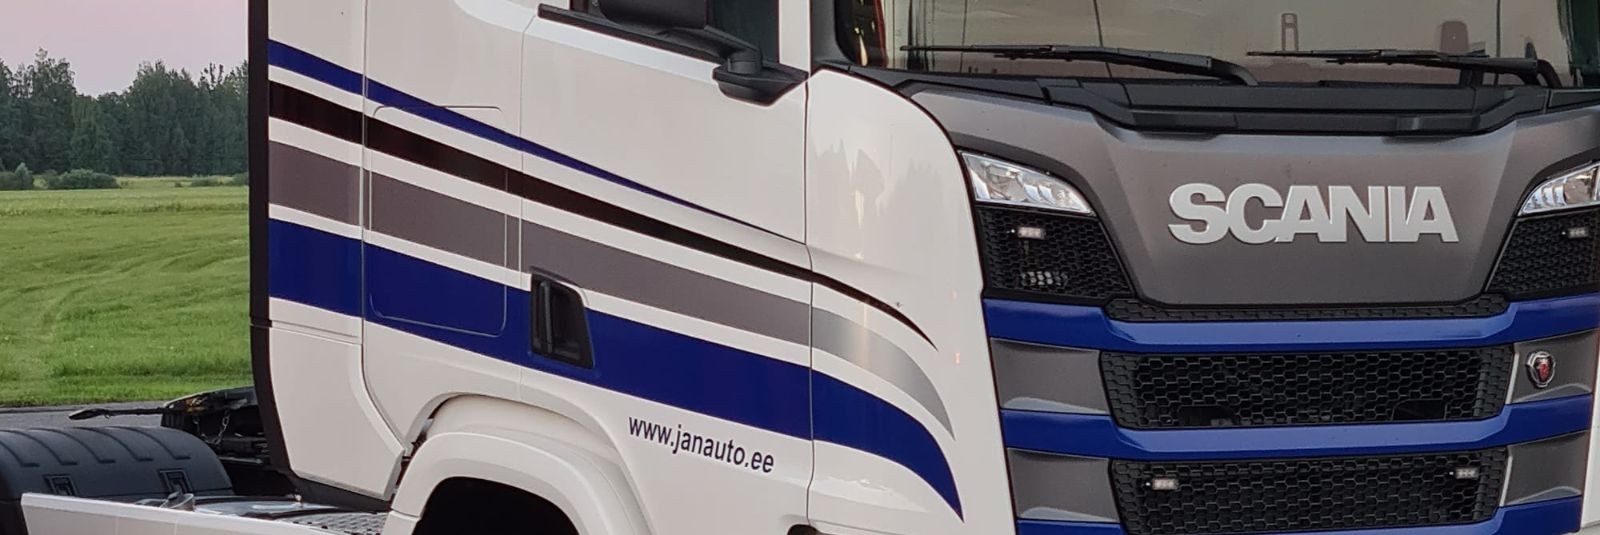 Janauto Group OÜ on juba üle kümnendi olnud Eesti transpordimaastikul silmapaistev mängija. Oma juured ulatuvad tagasi aastasse 2009, mil ettevõtte asutati Eest